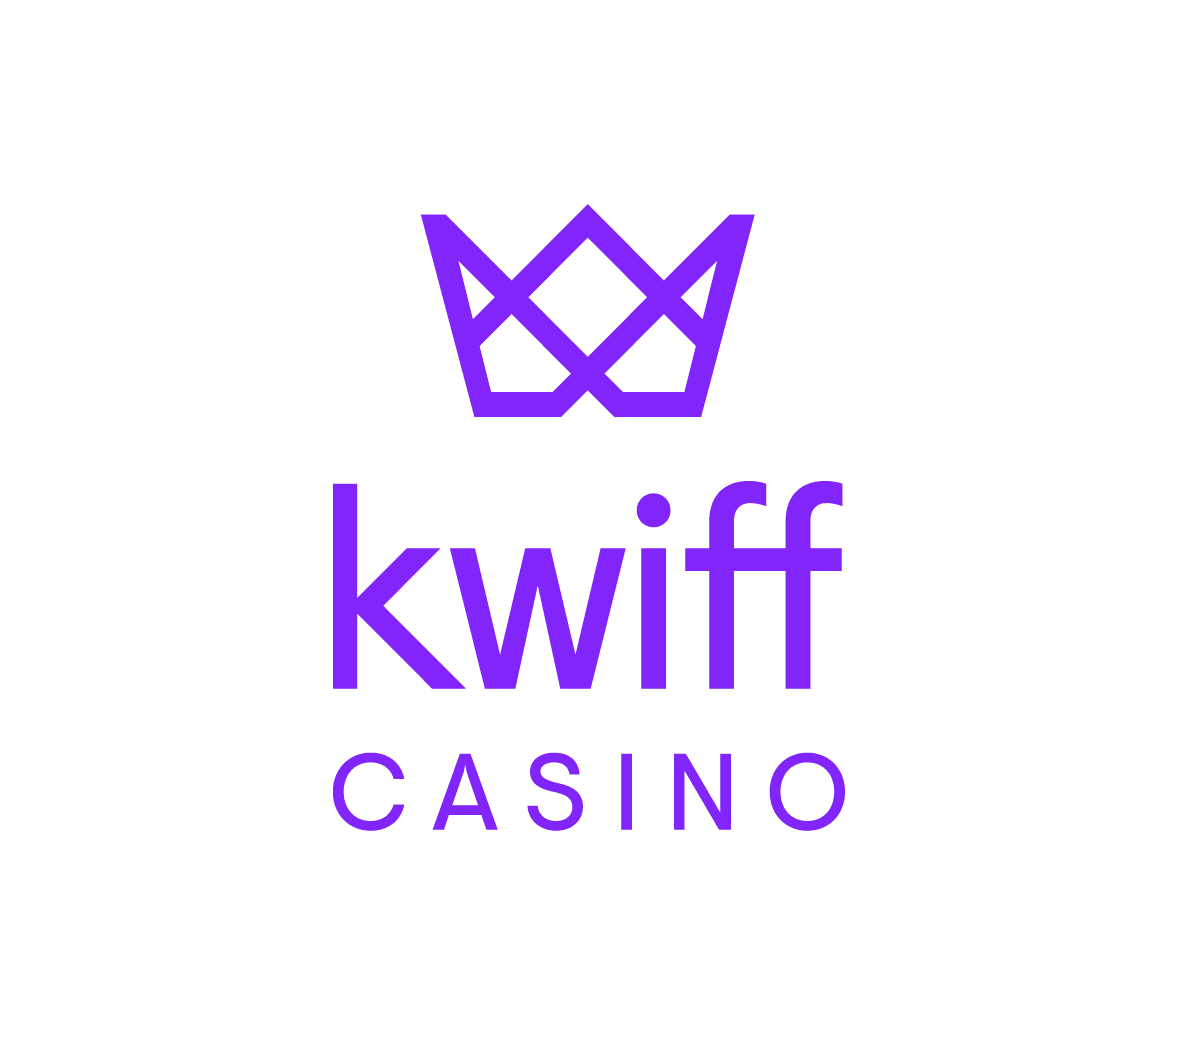 Betkwiff Casino